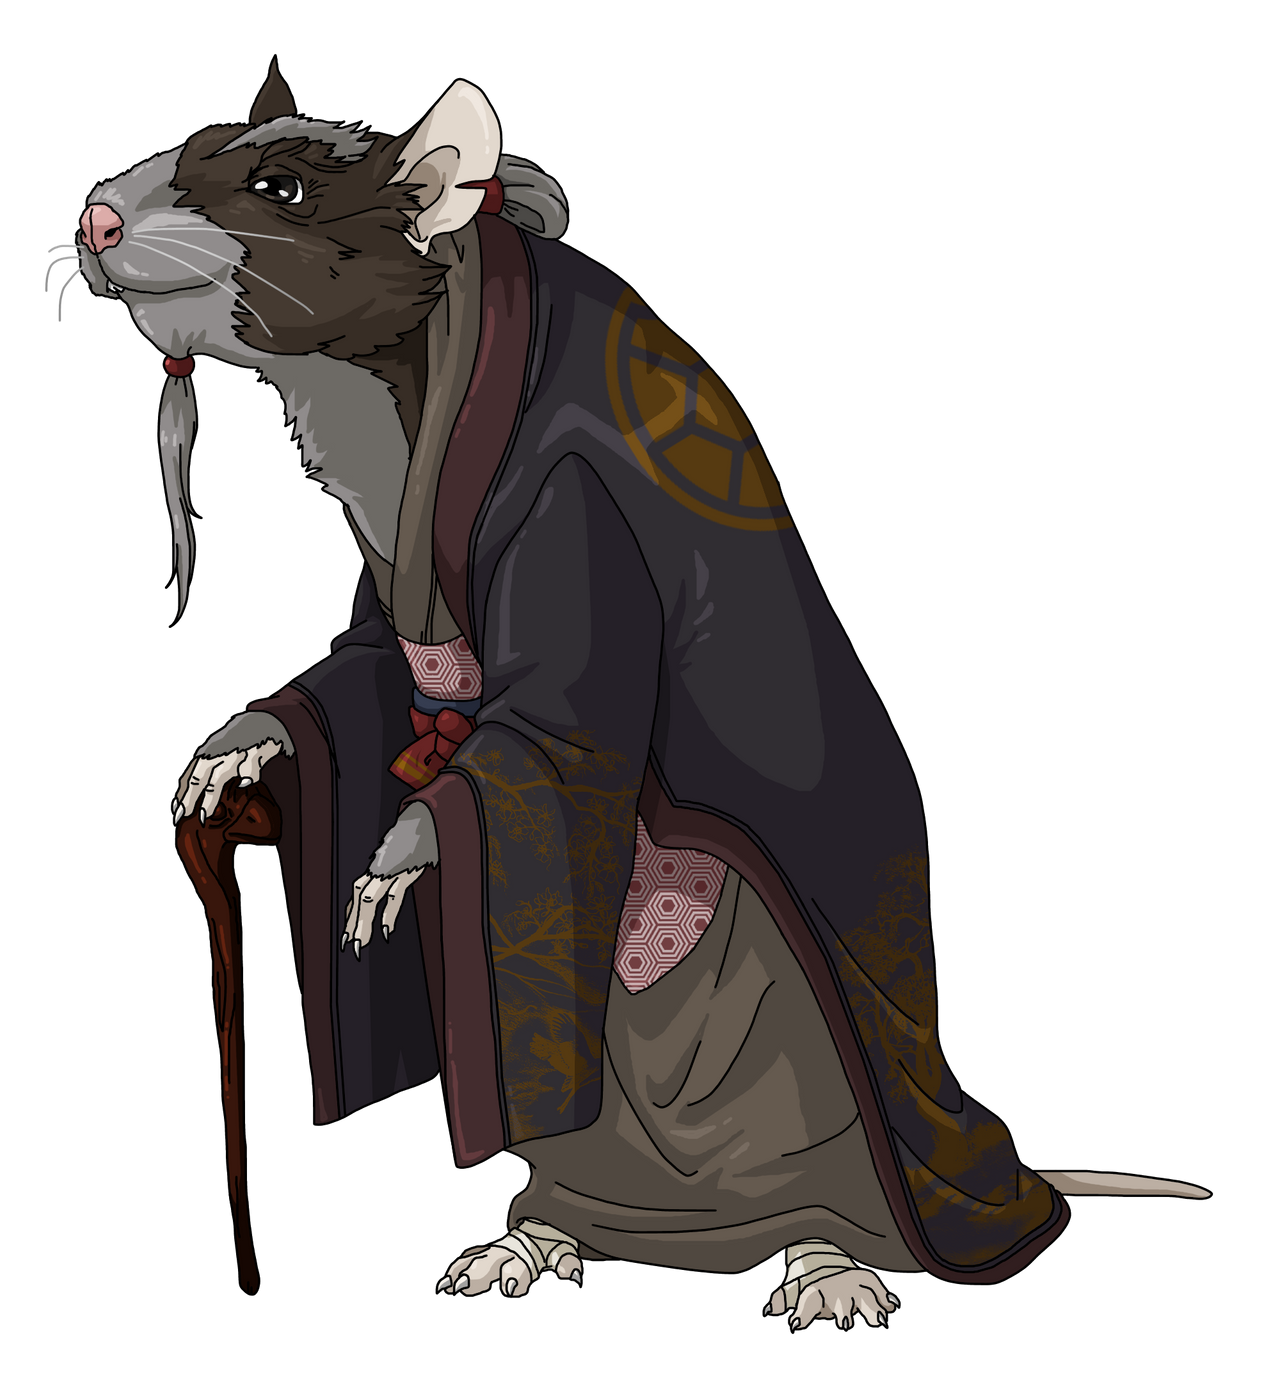 Rat King by Zerbear333 on DeviantArt